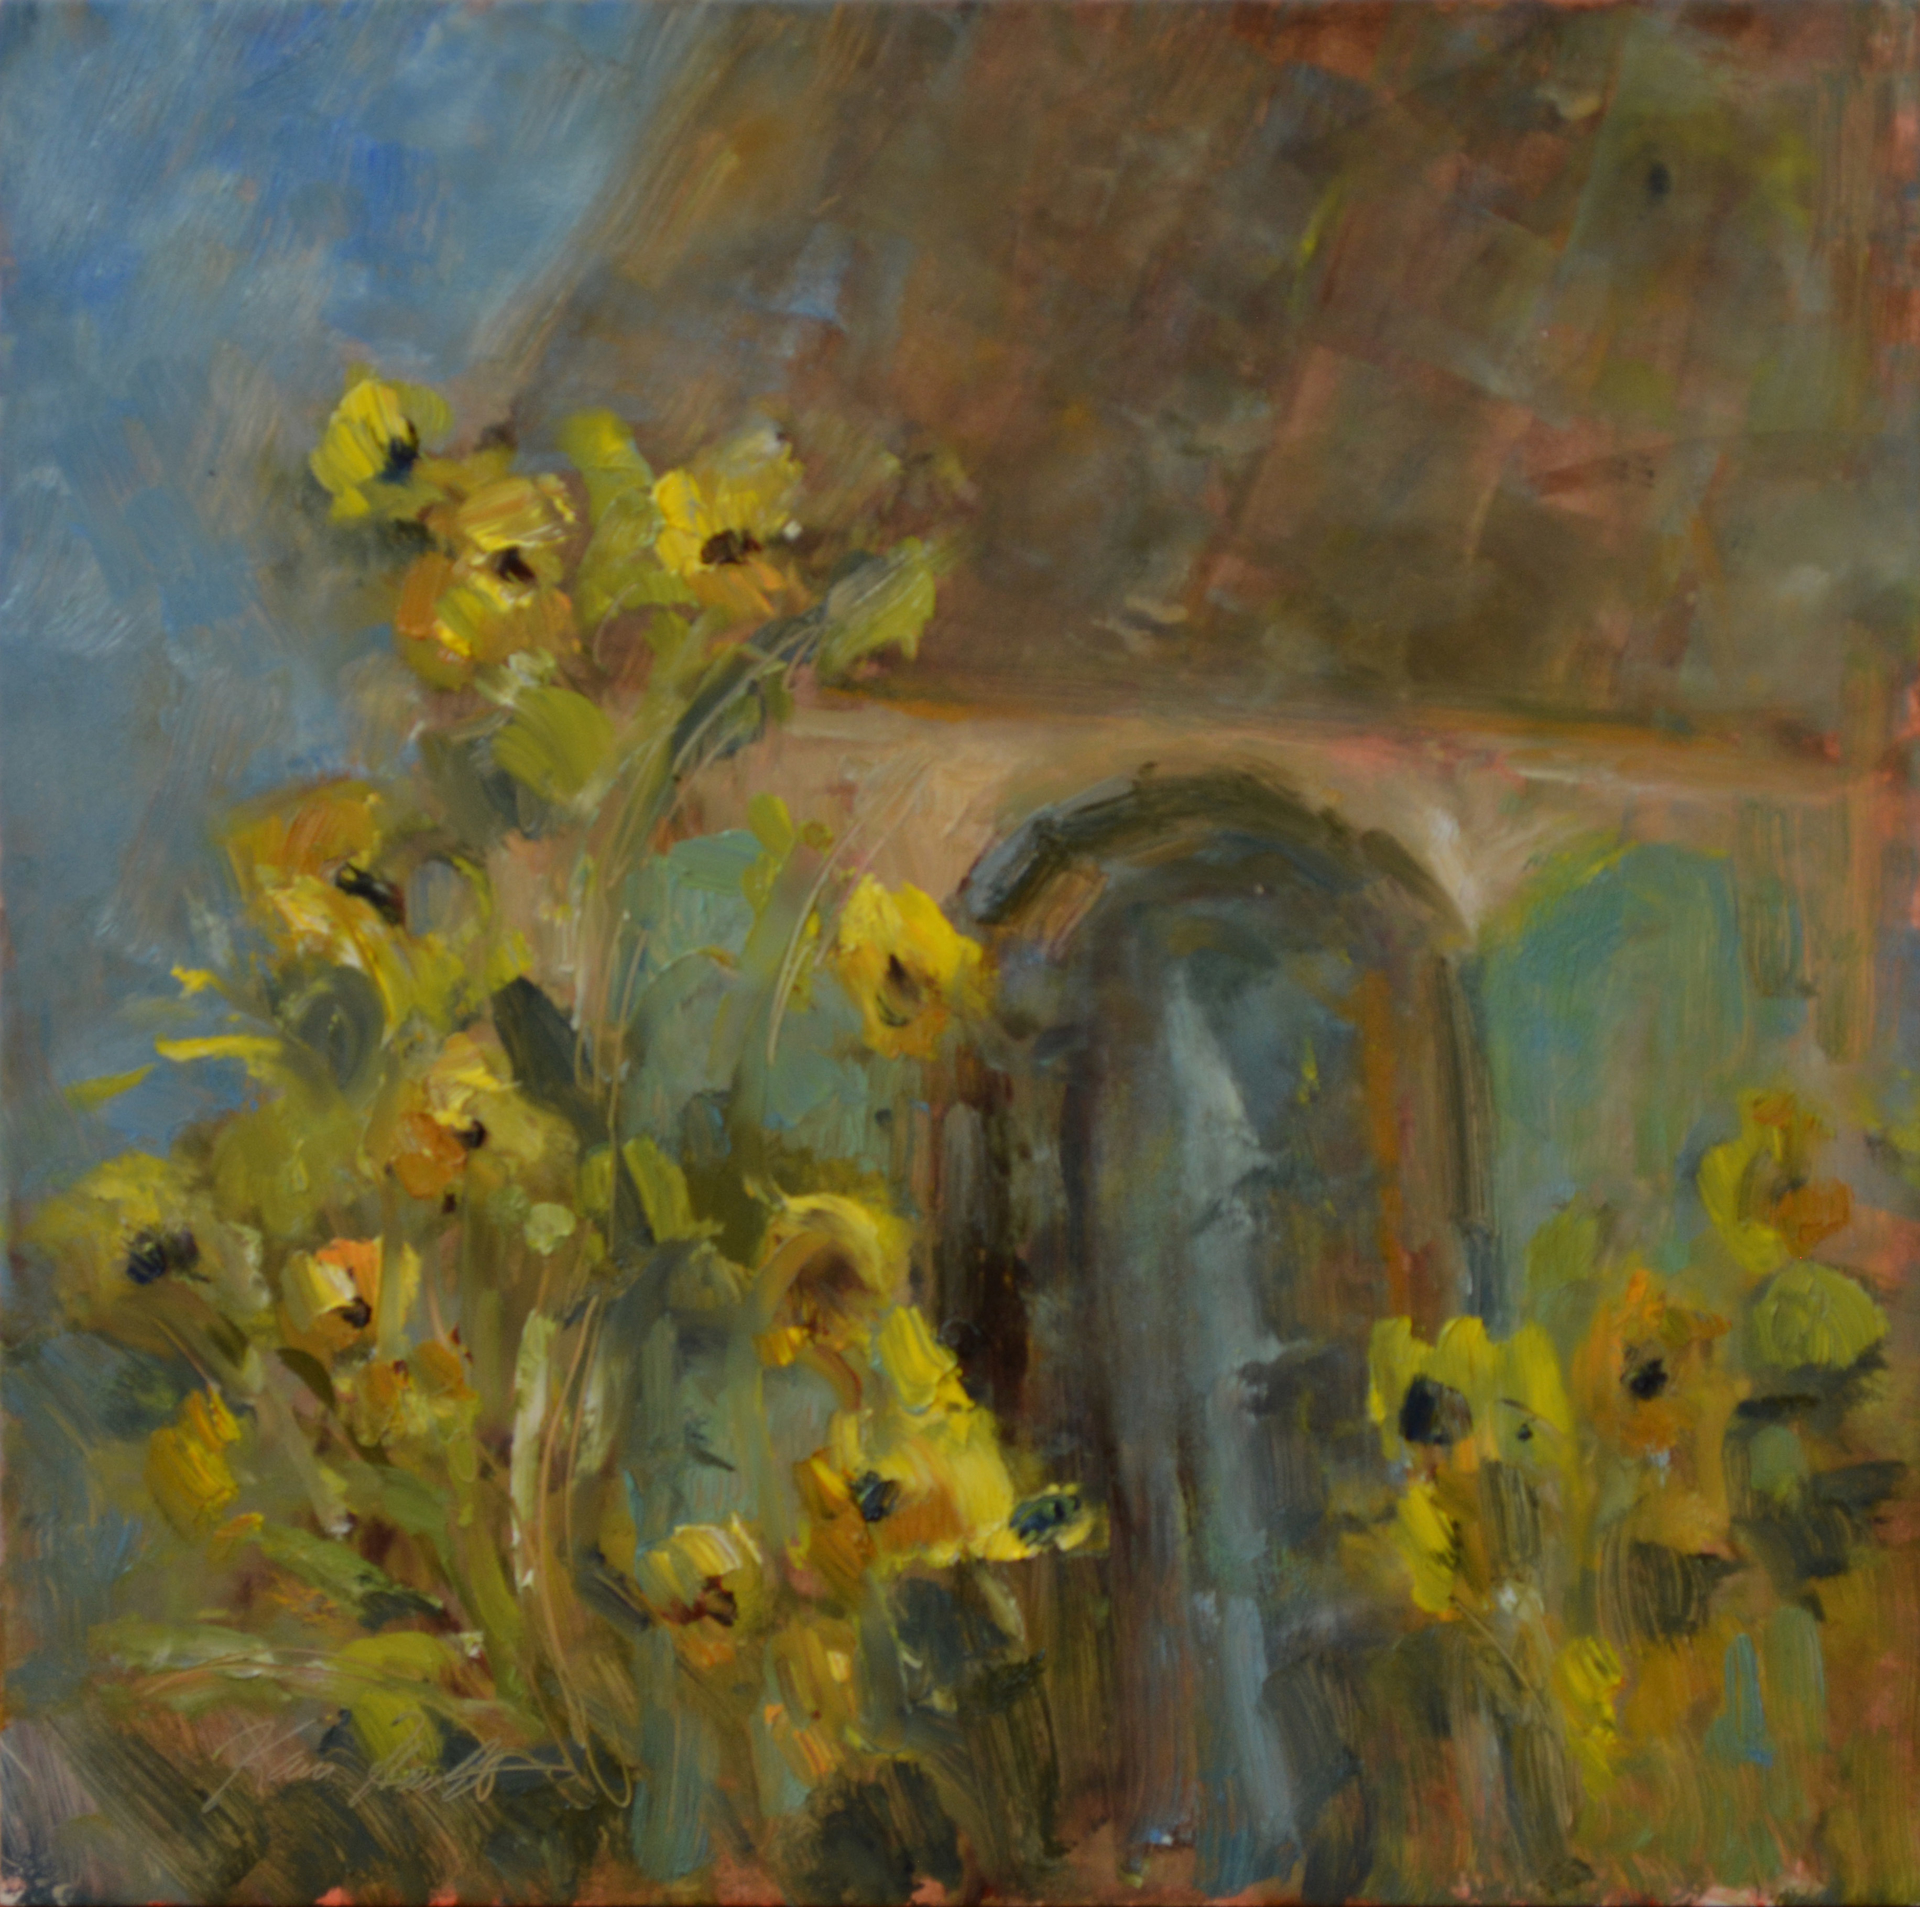 French Sunflowers by Karen Hewitt Hagan